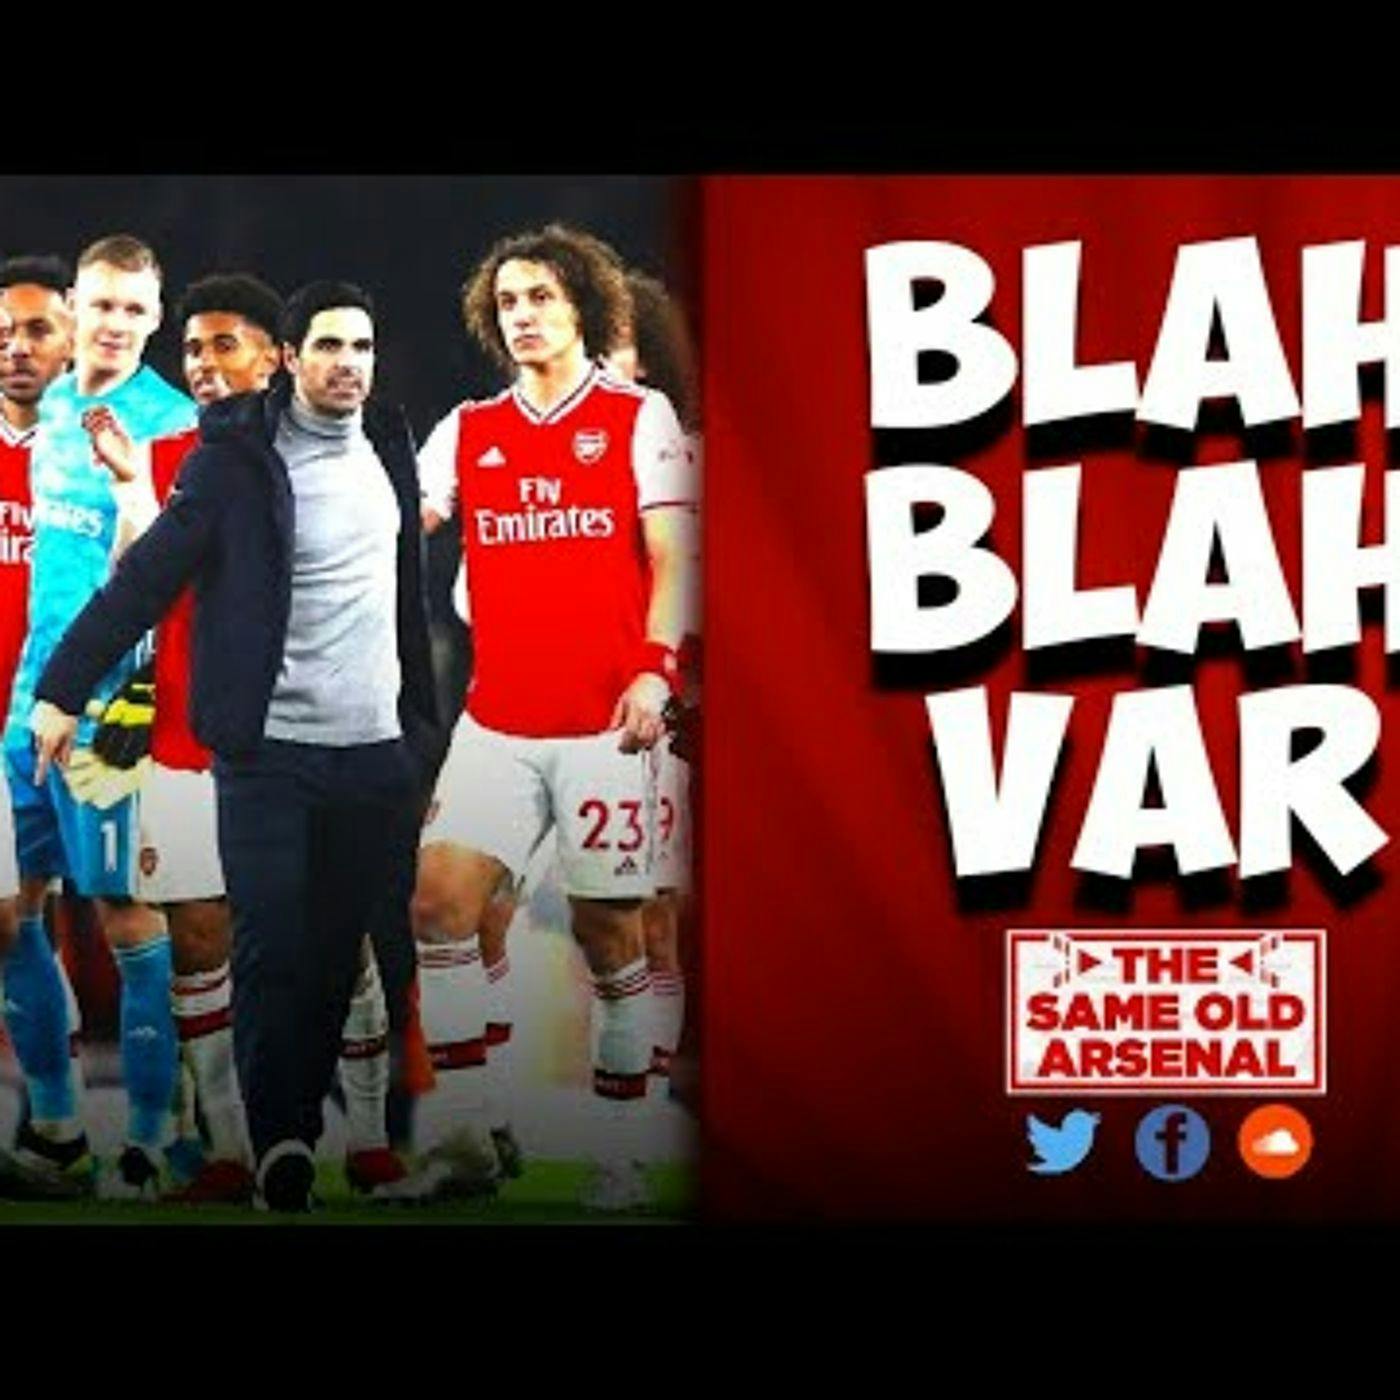 Arsenal 1-0 West Ham | Episode 107 | Blah Blah Vah